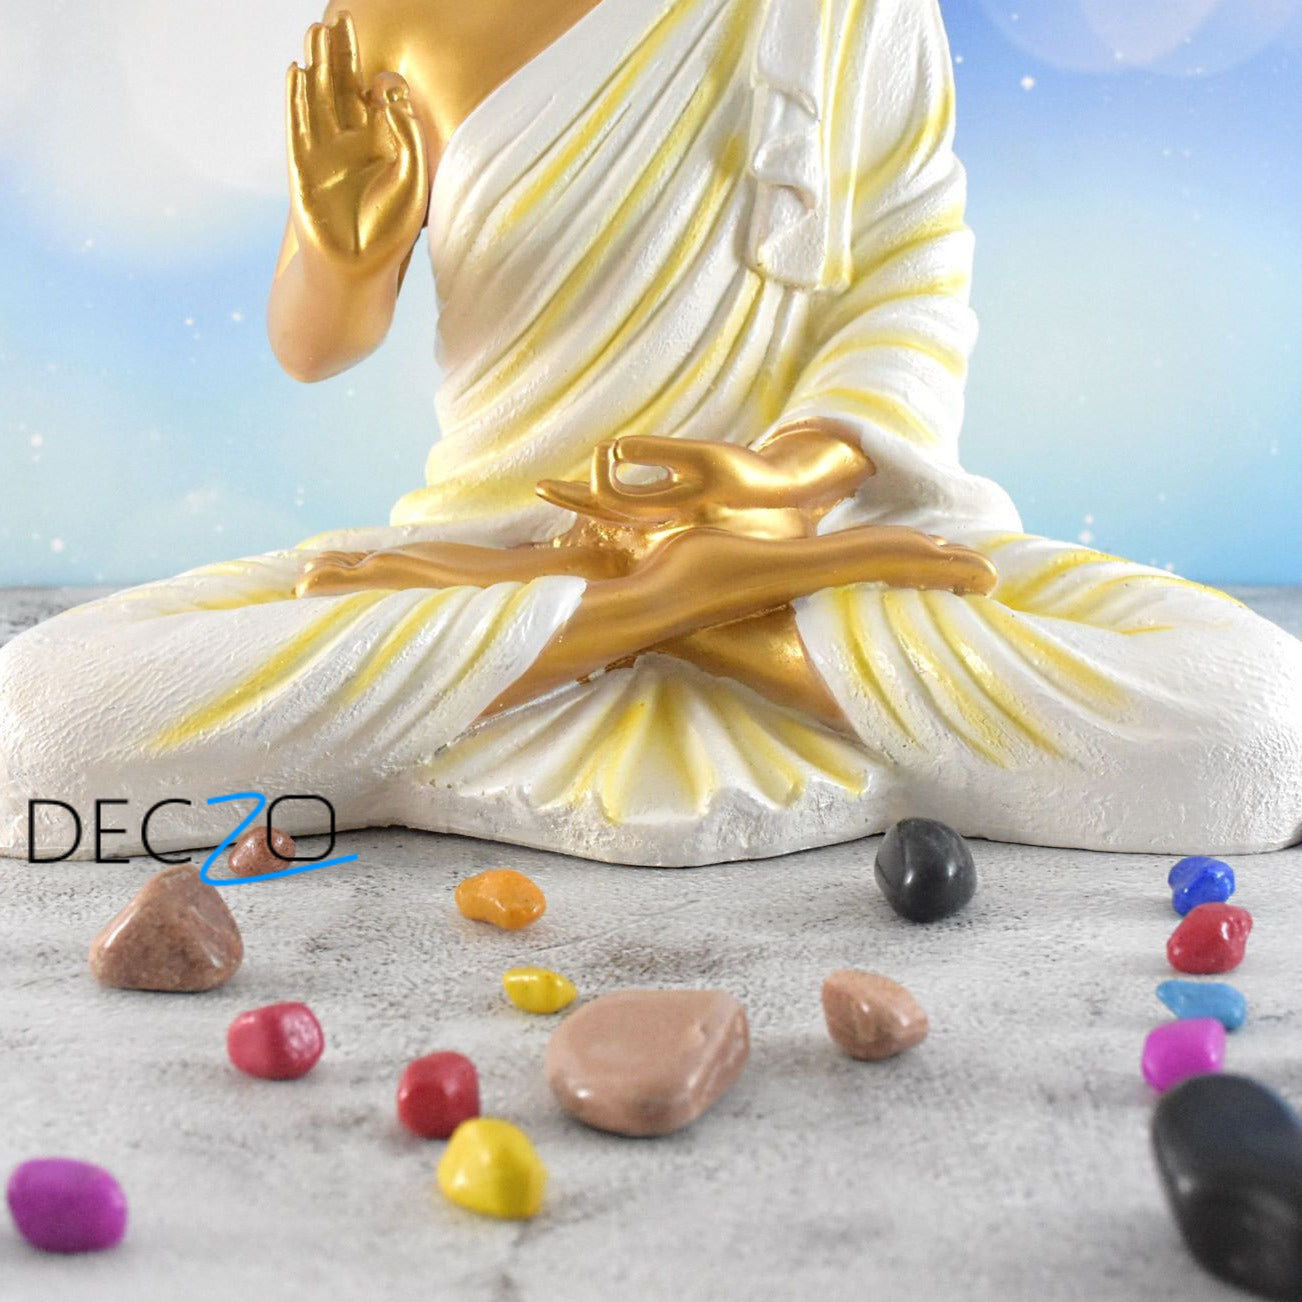 Big Size Meditating Buddha Idol : Golden - Deczo